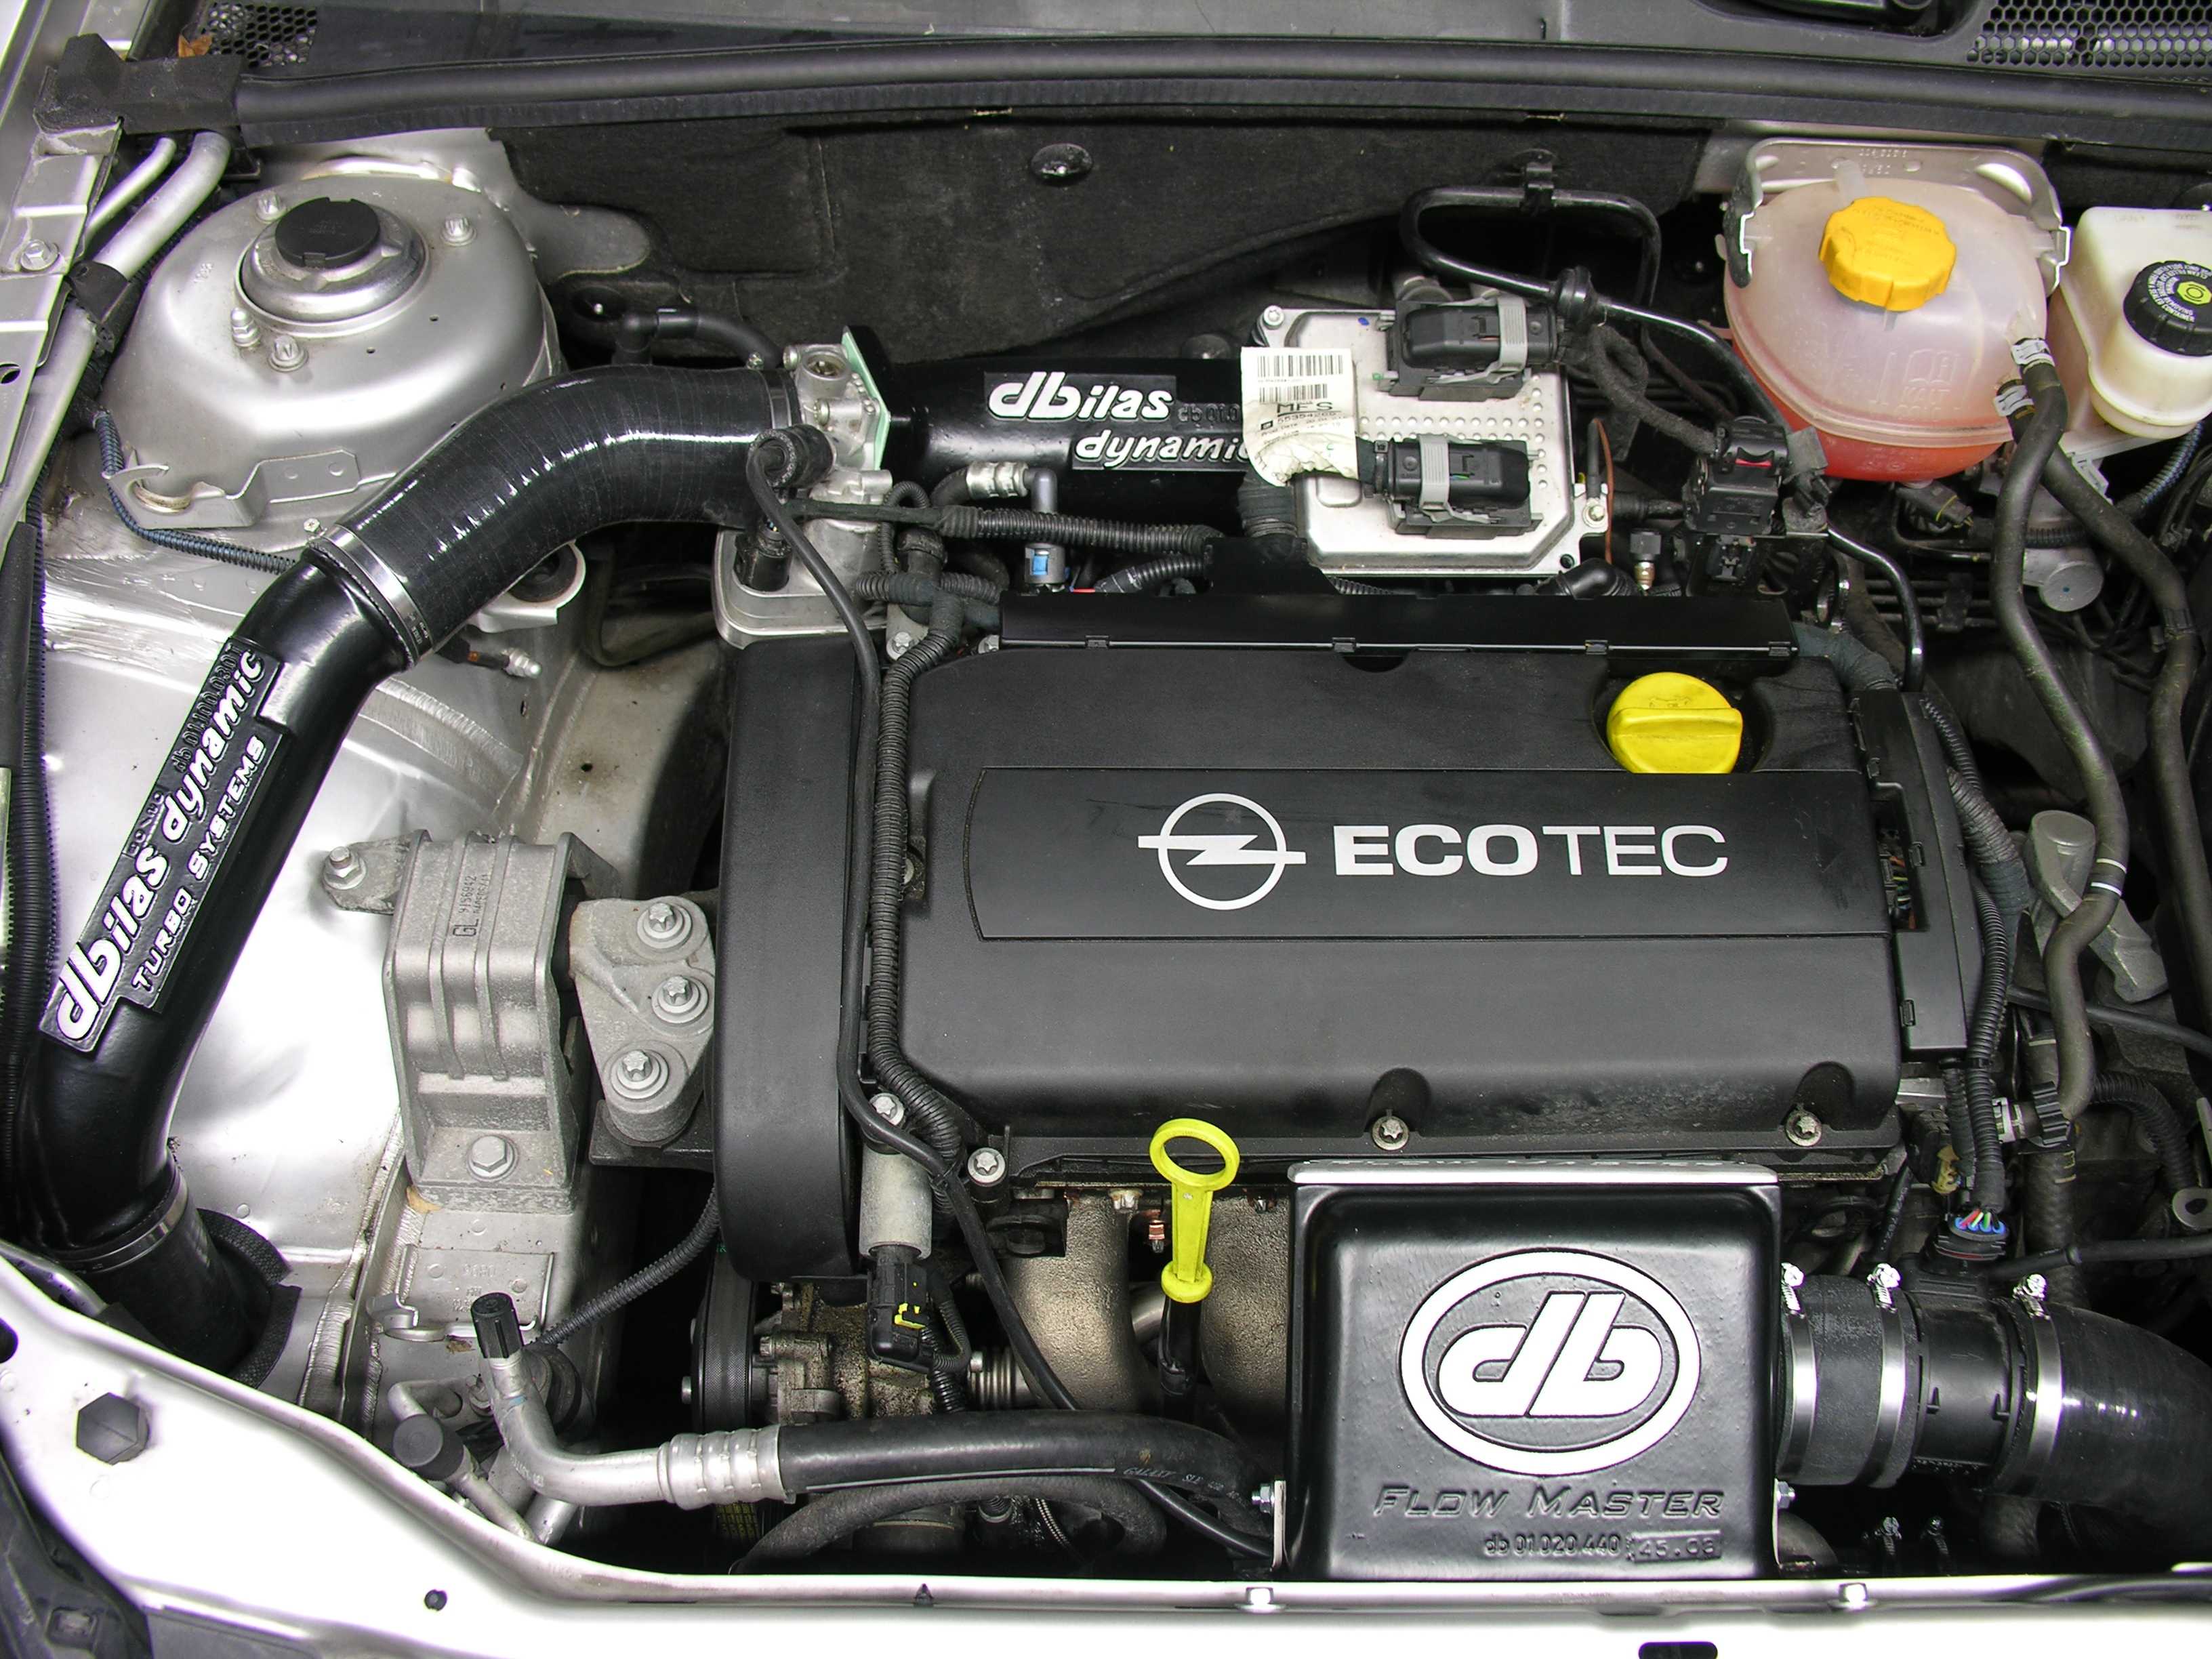 Двигатель z22se: характеристика, конструкция, особенности, обслуживание, ремонт, тюнинг